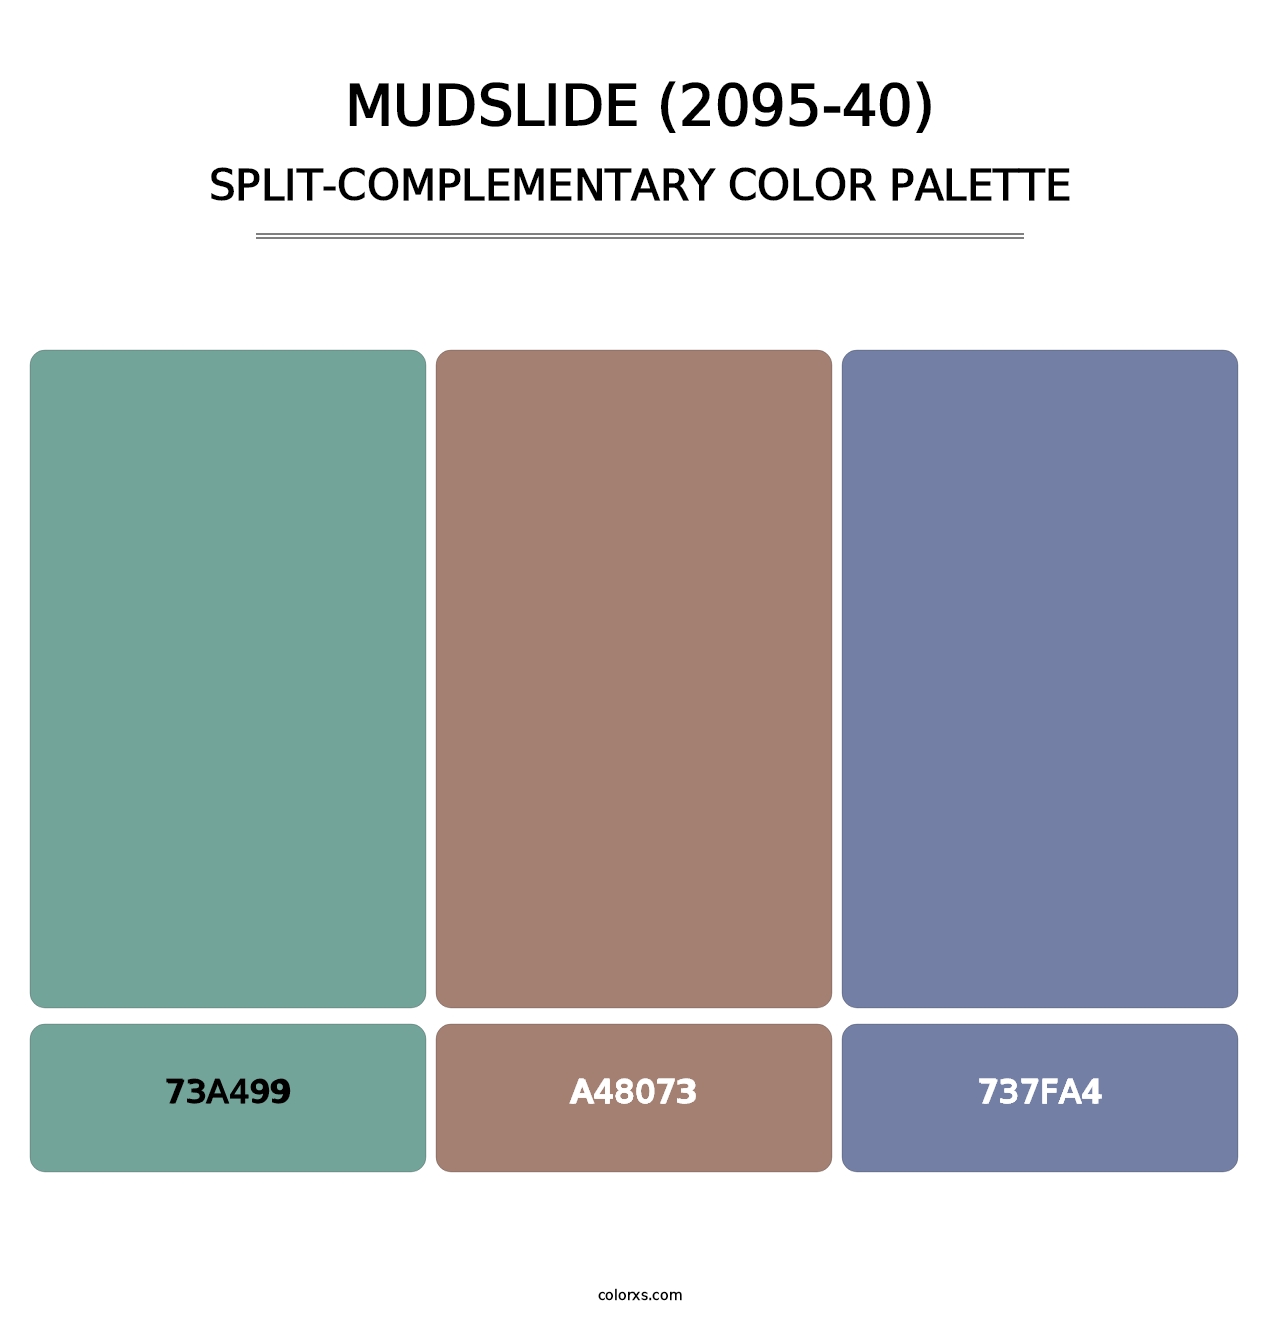 Mudslide (2095-40) - Split-Complementary Color Palette